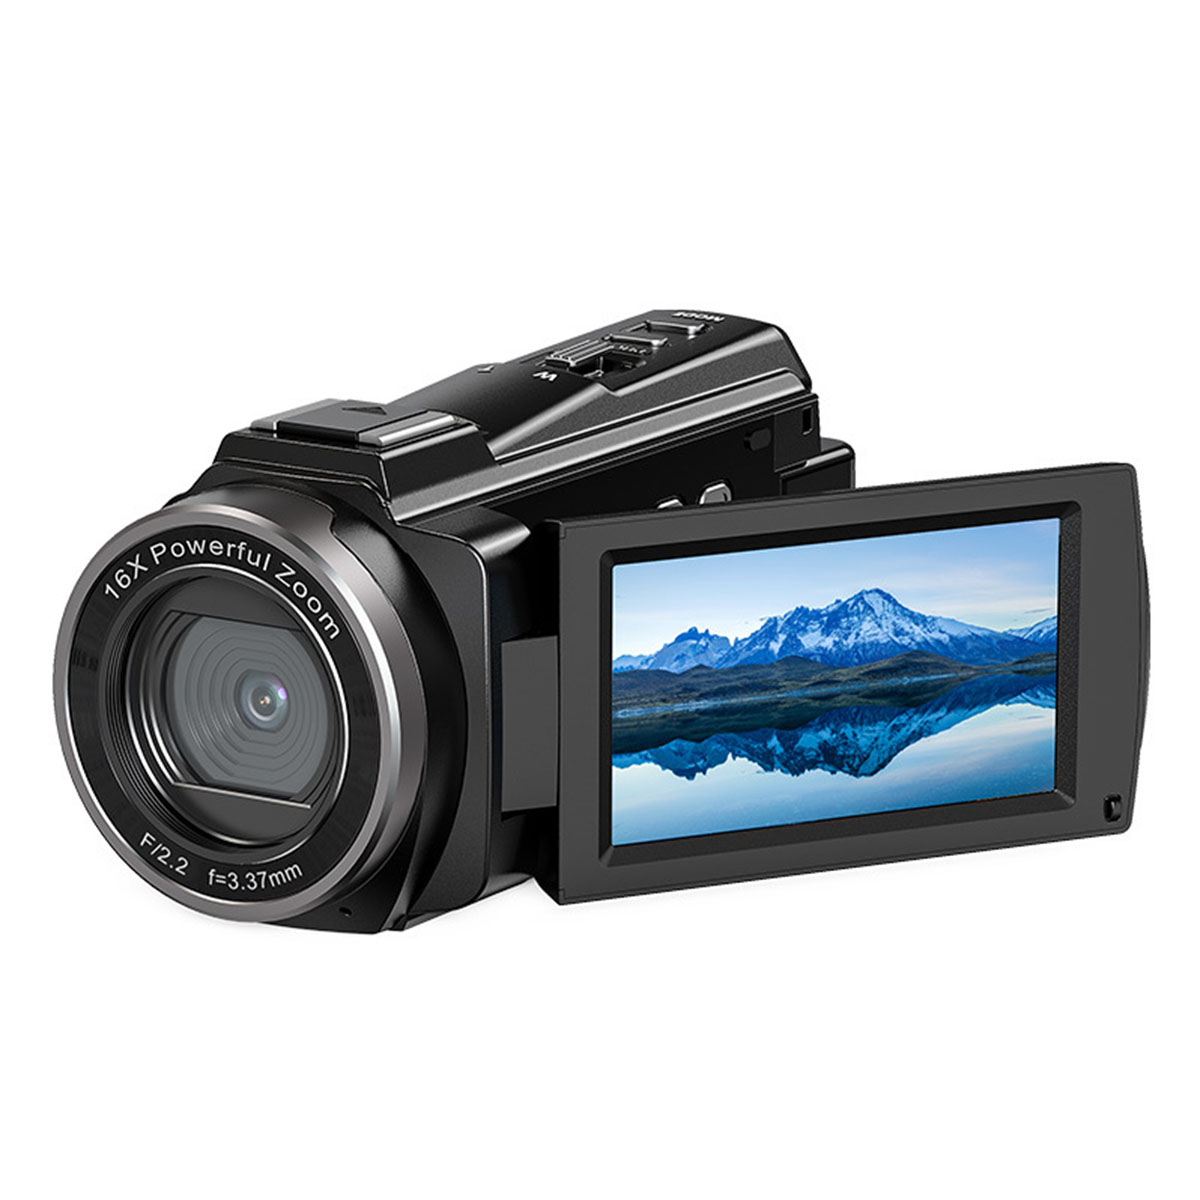 Night DV Shot Digitalkamera 5K Schwarz- 48 MP, und langer mit BRIGHTAKE Akkulaufzeit, Outdoor WiFi Kamera